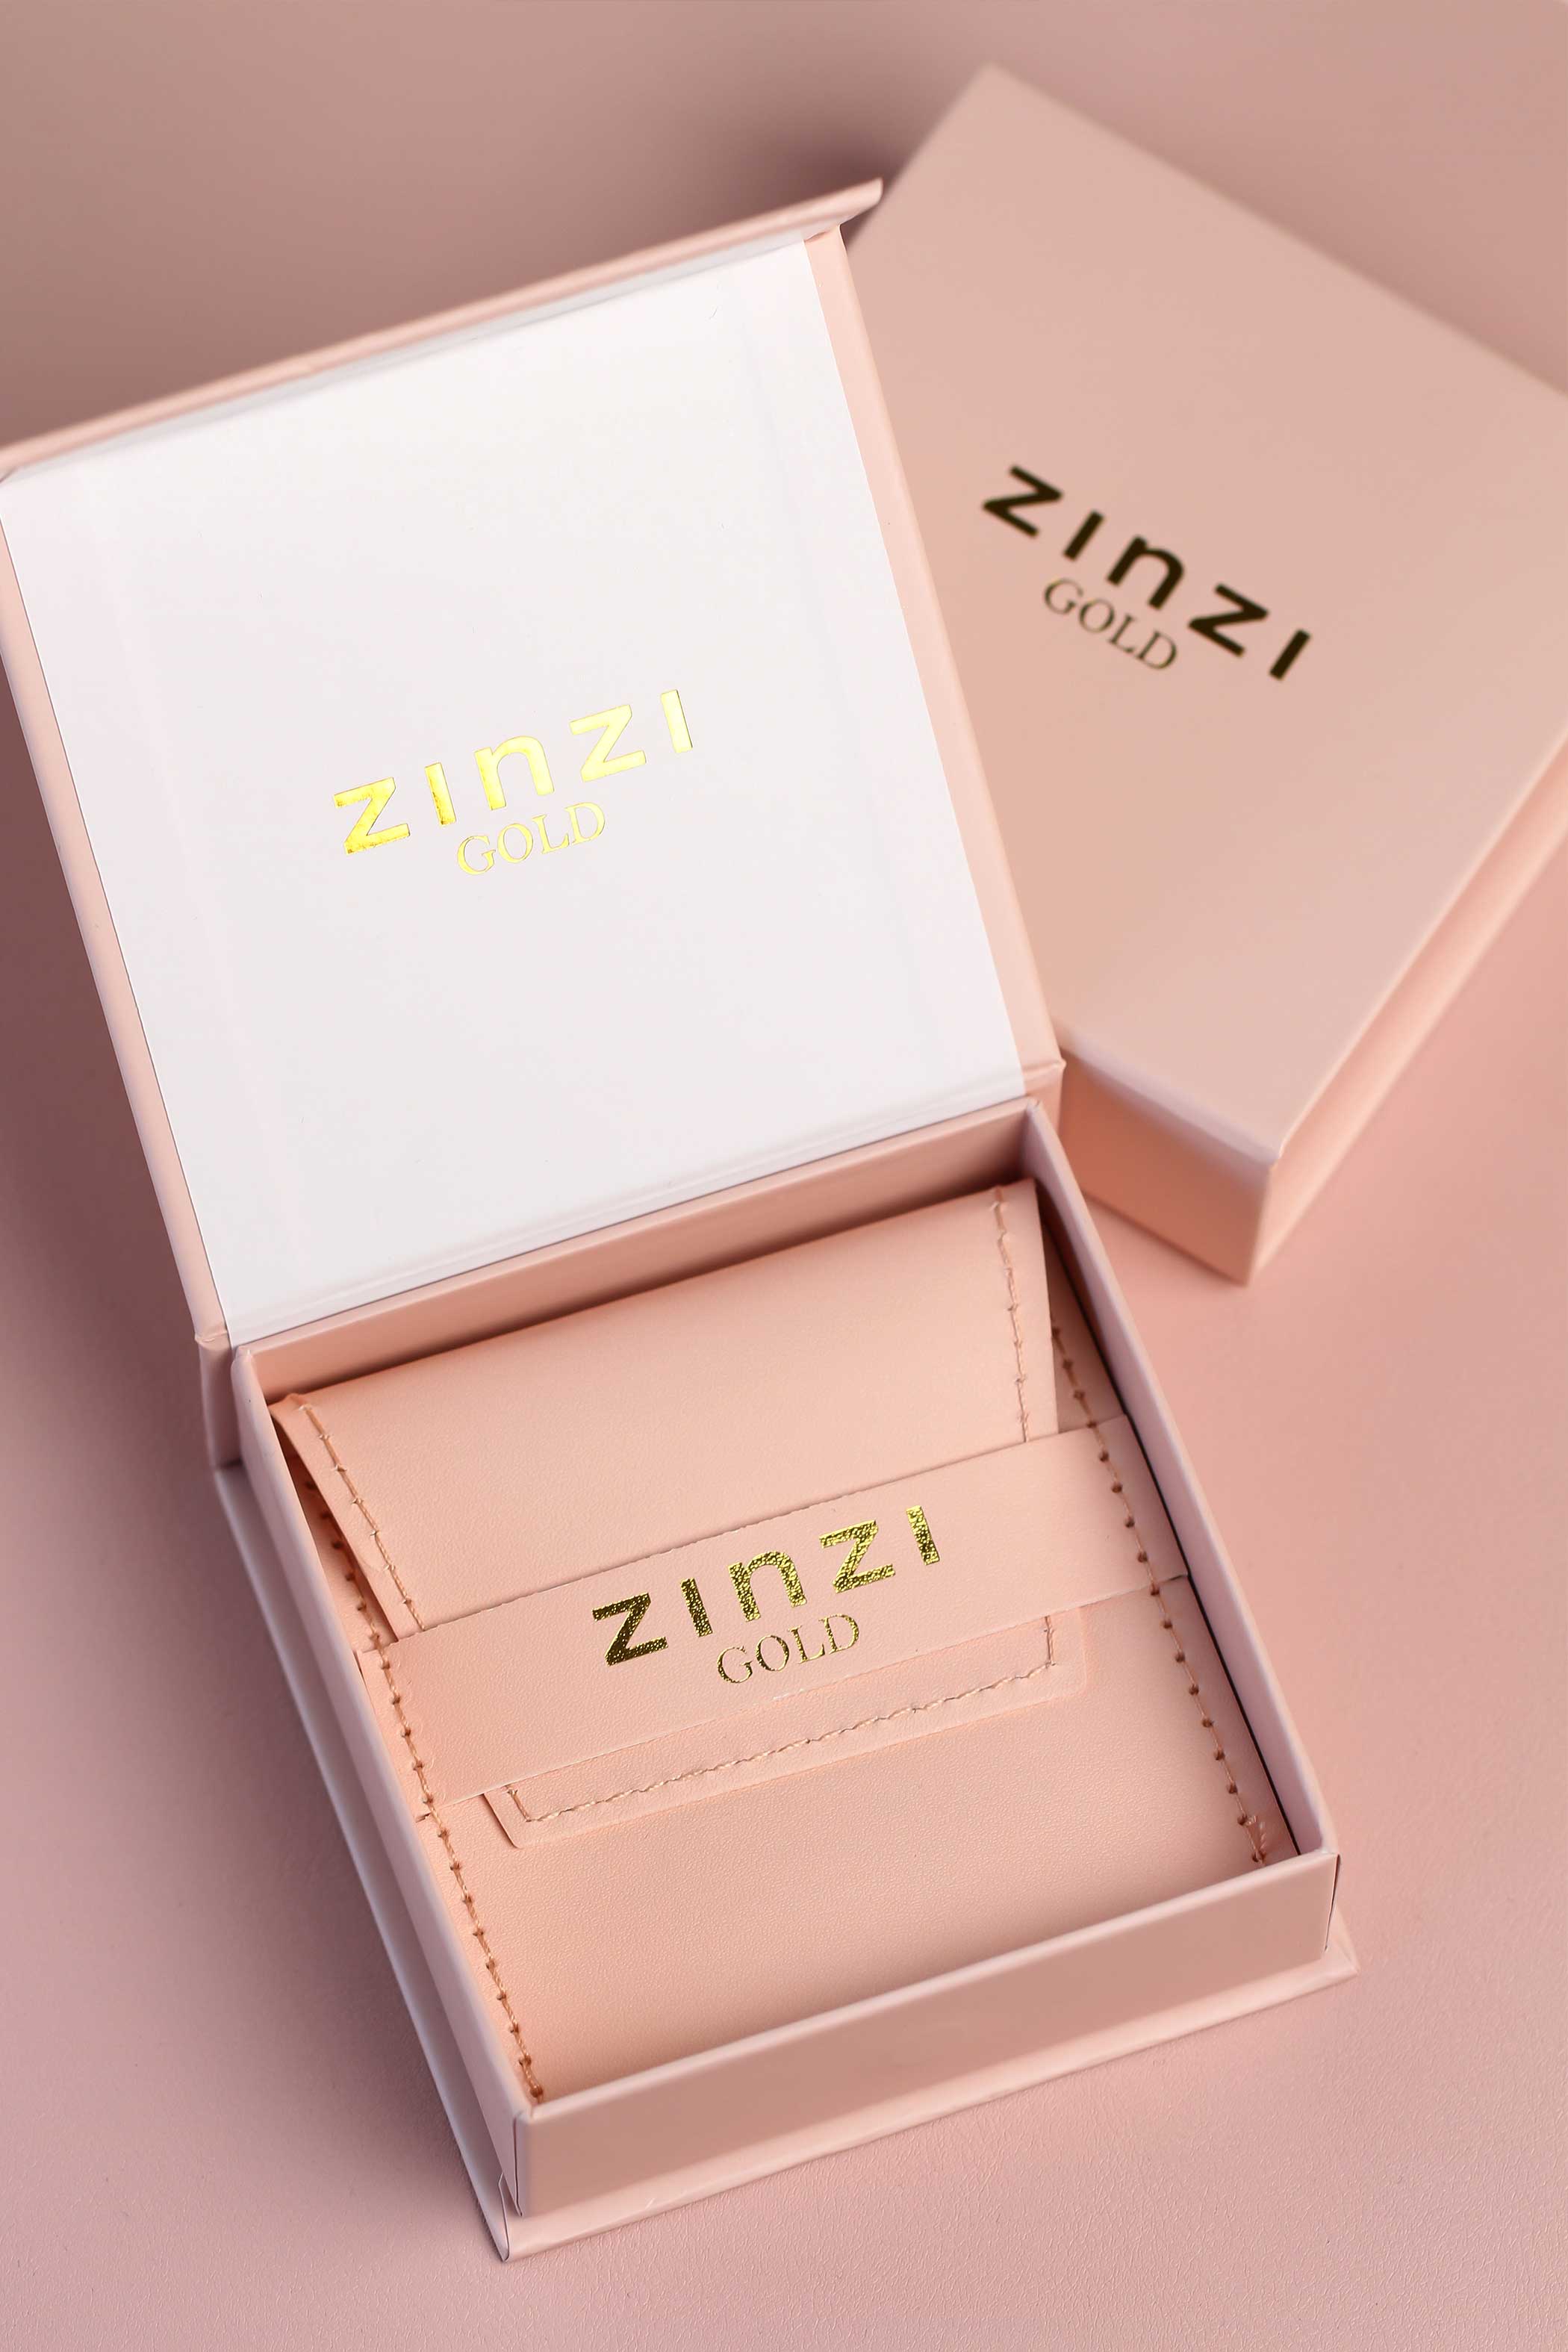 ZINZI 14K Gold Earrings Pendants Baguette Cut White Zirconia 7mm ZGCH424 (excl. hoop earrings)